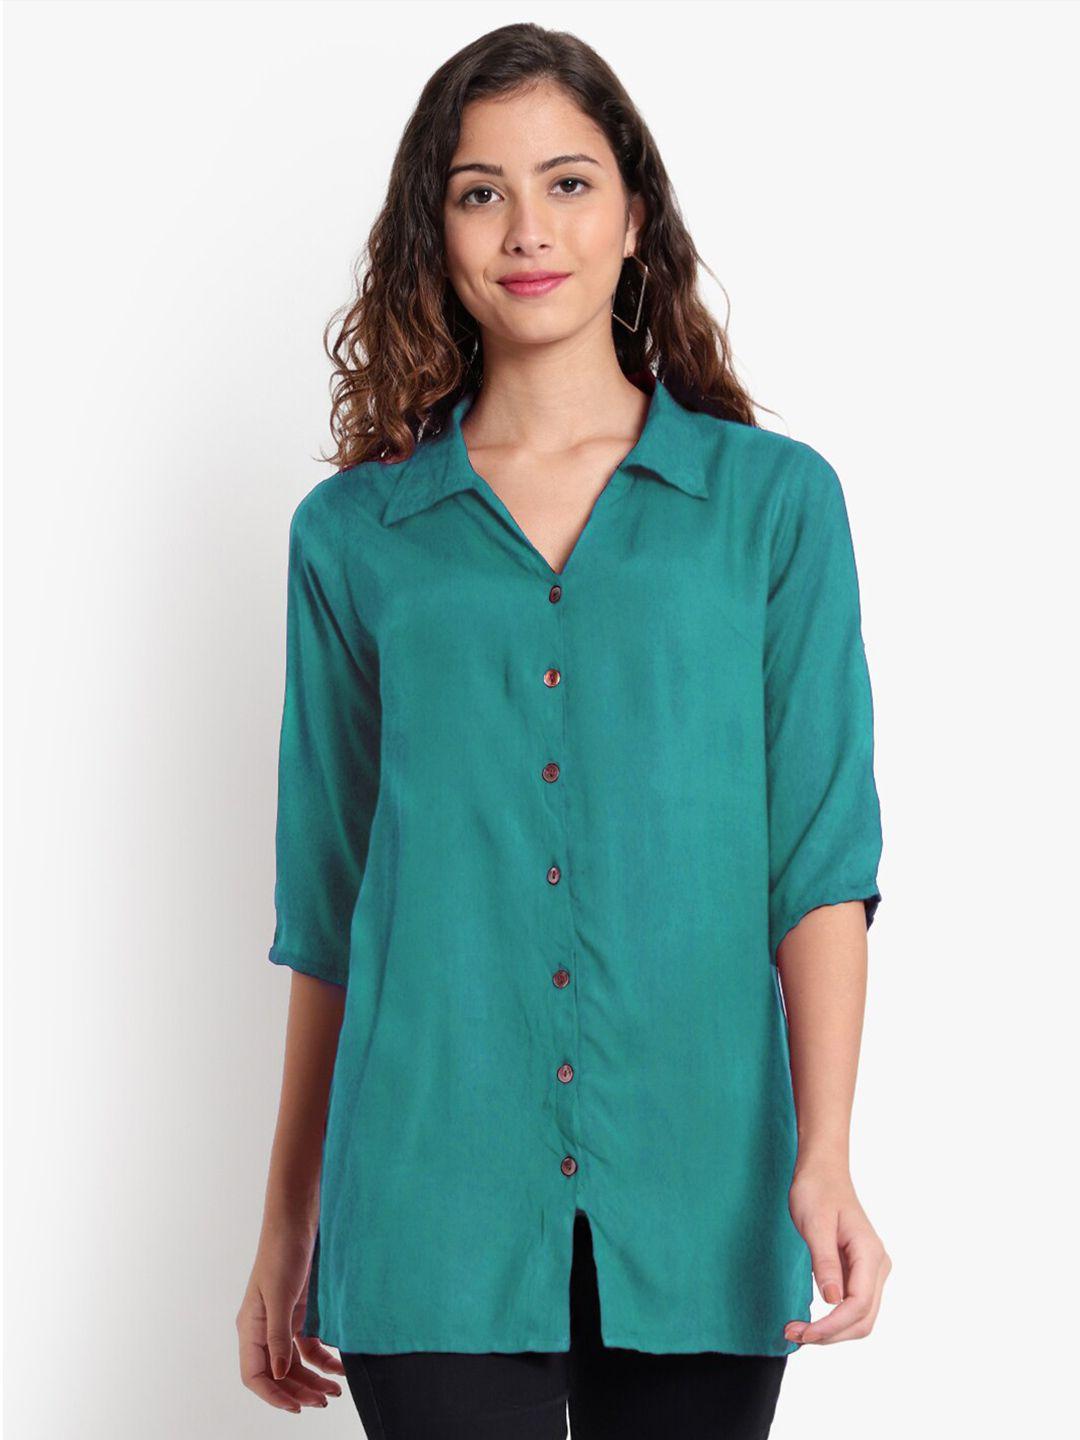 indietoga women classic opaque casual shirt